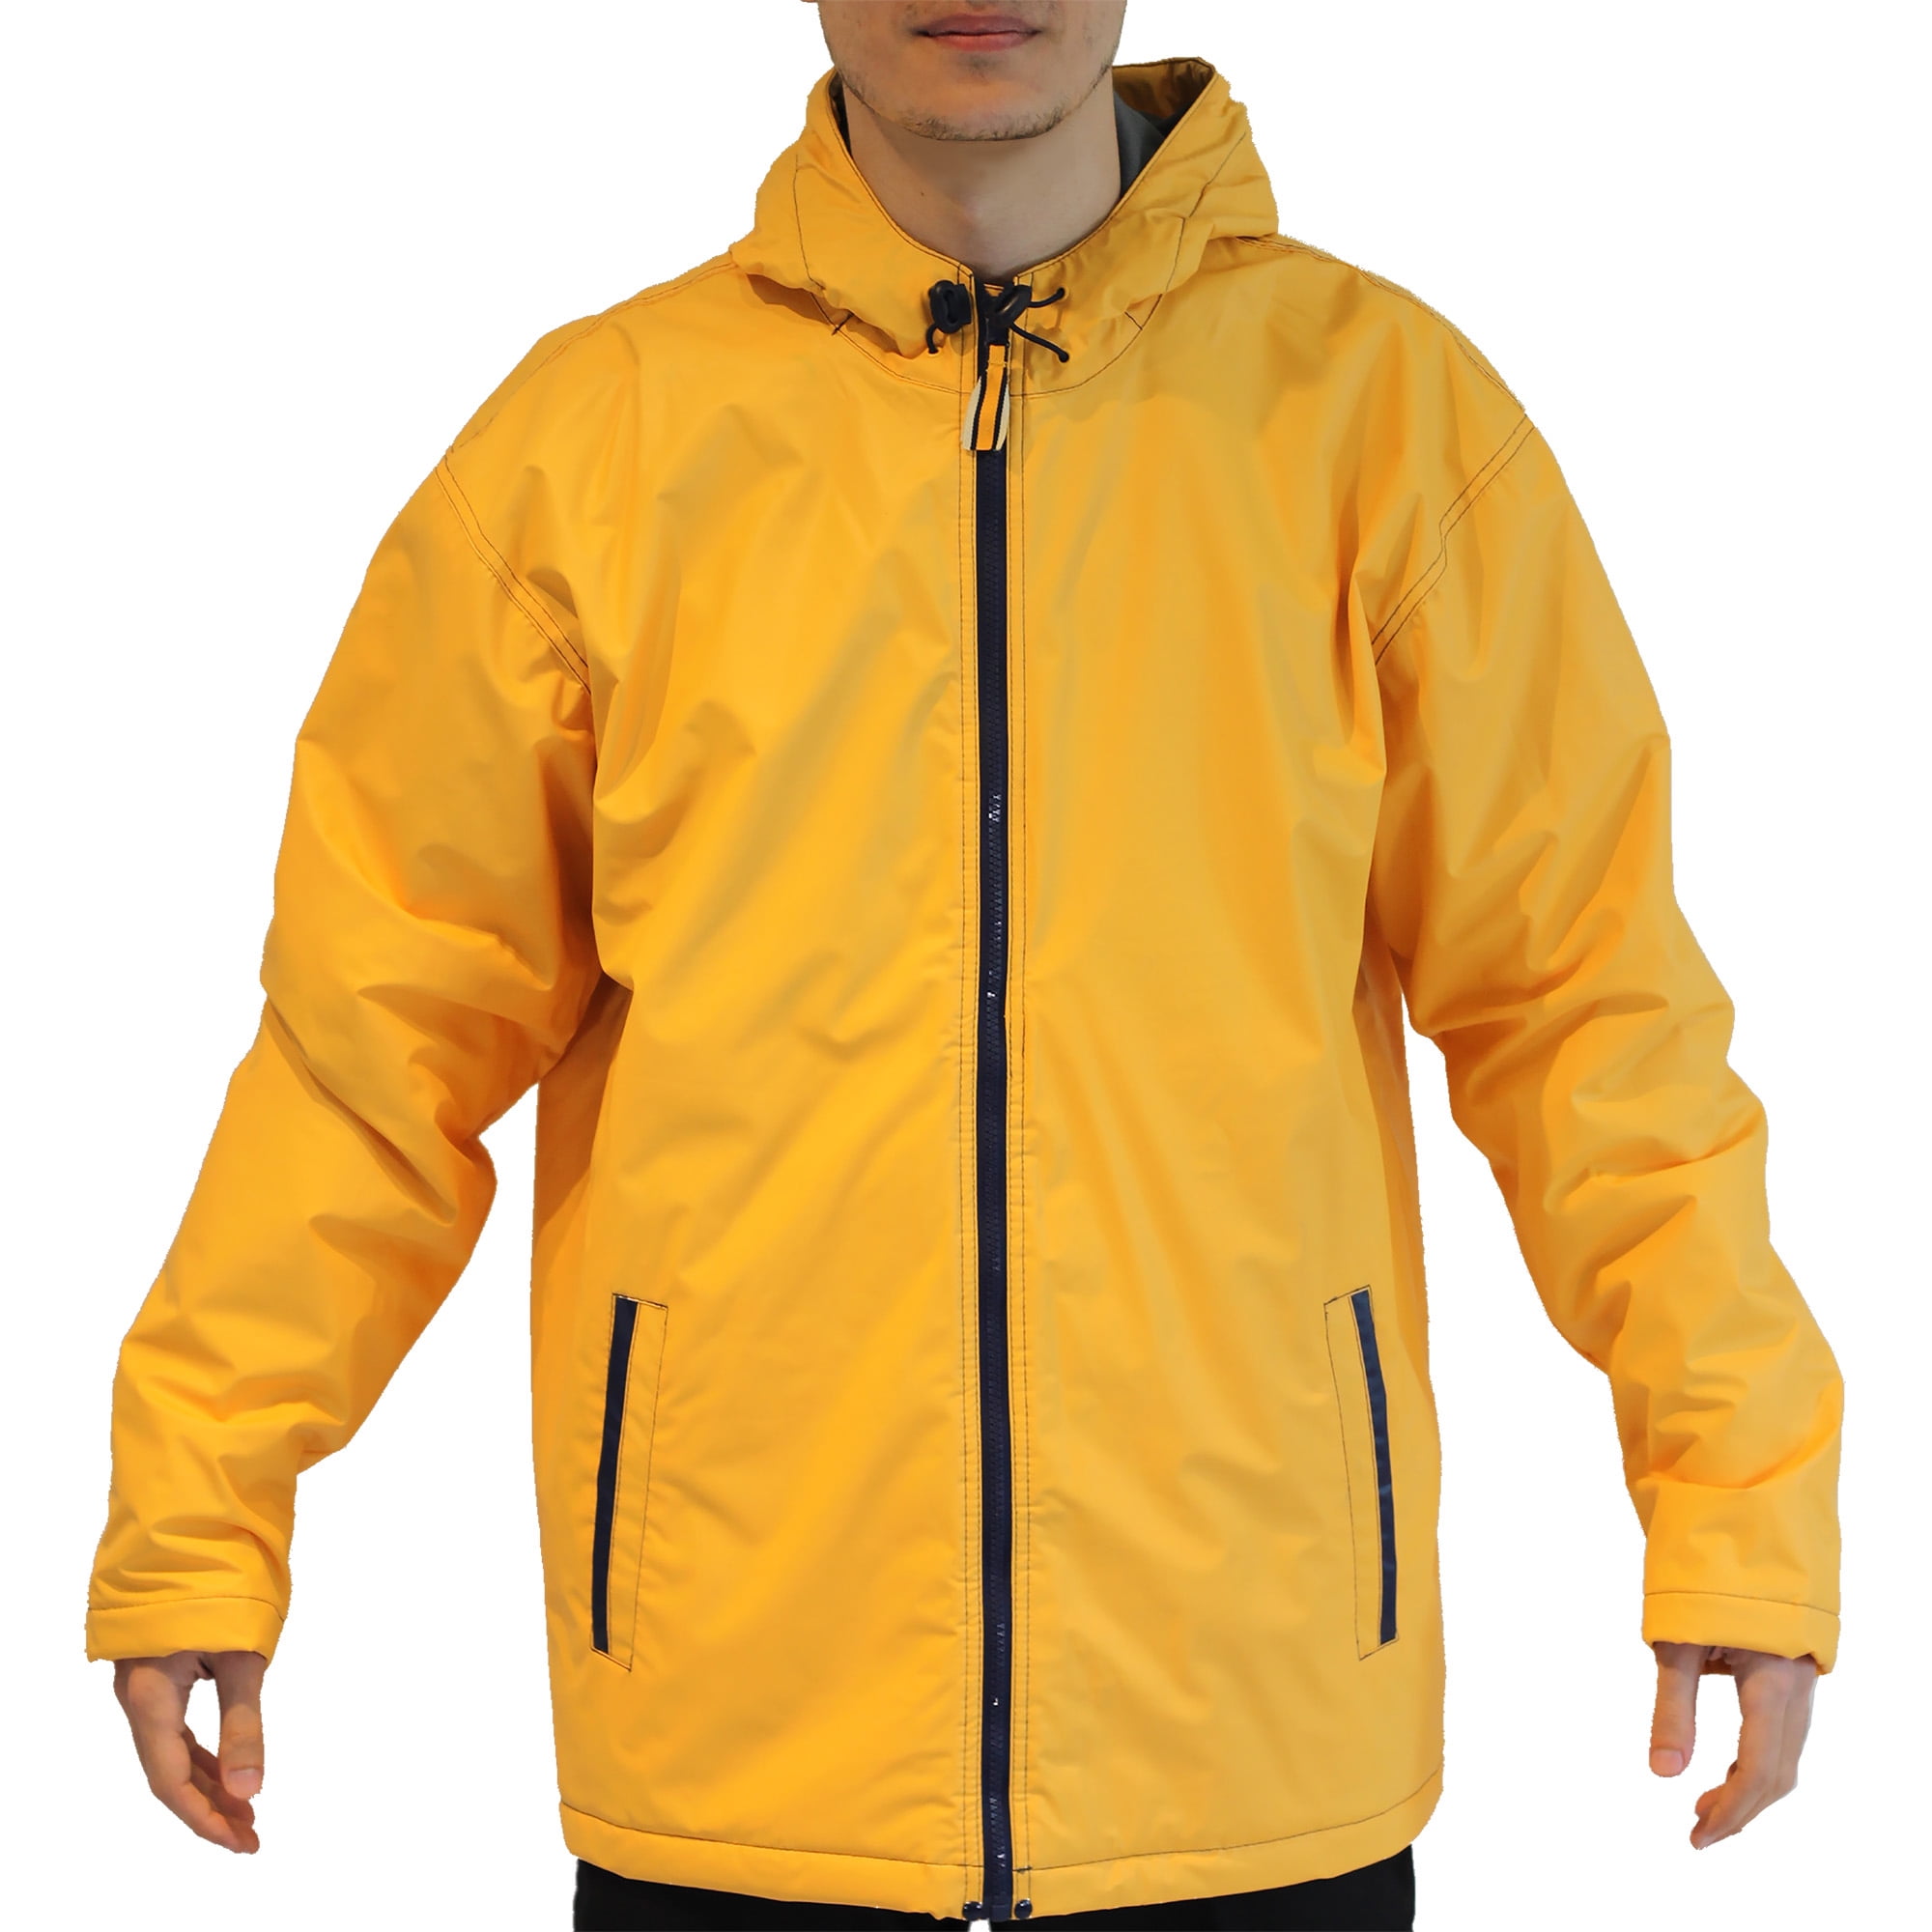 Men's Raincoat, up to size 2XL - Walmart.com